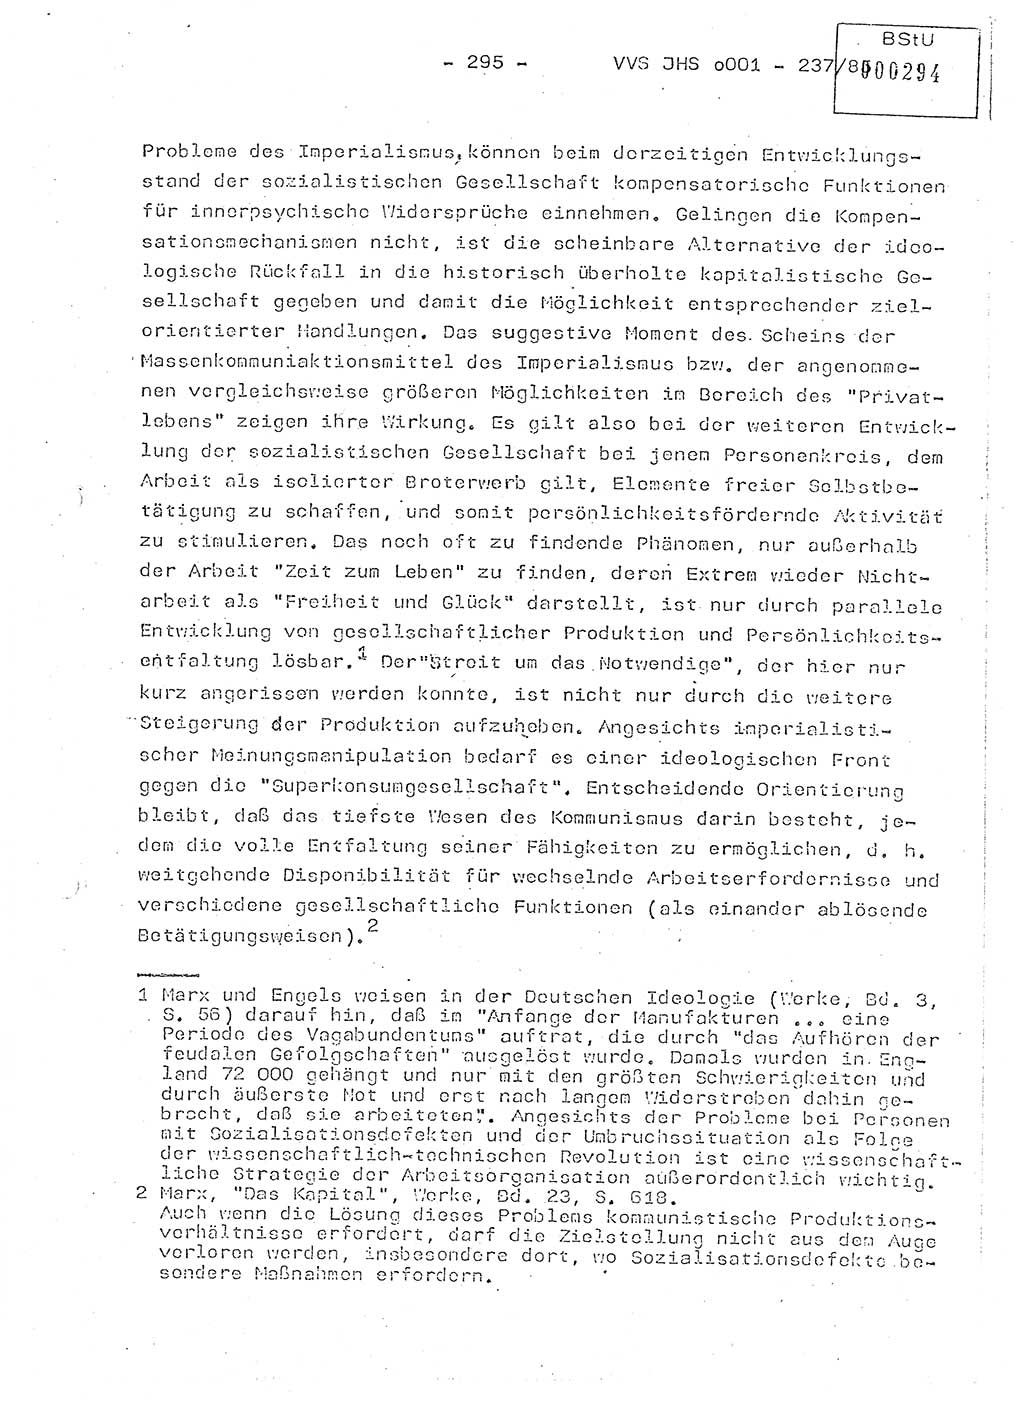 Dissertation Oberstleutnant Peter Jakulski (JHS), Oberstleutnat Christian Rudolph (HA Ⅸ), Major Horst Böttger (ZMD), Major Wolfgang Grüneberg (JHS), Major Albert Meutsch (JHS), Ministerium für Staatssicherheit (MfS) [Deutsche Demokratische Republik (DDR)], Juristische Hochschule (JHS), Vertrauliche Verschlußsache (VVS) o001-237/85, Potsdam 1985, Seite 295 (Diss. MfS DDR JHS VVS o001-237/85 1985, S. 295)